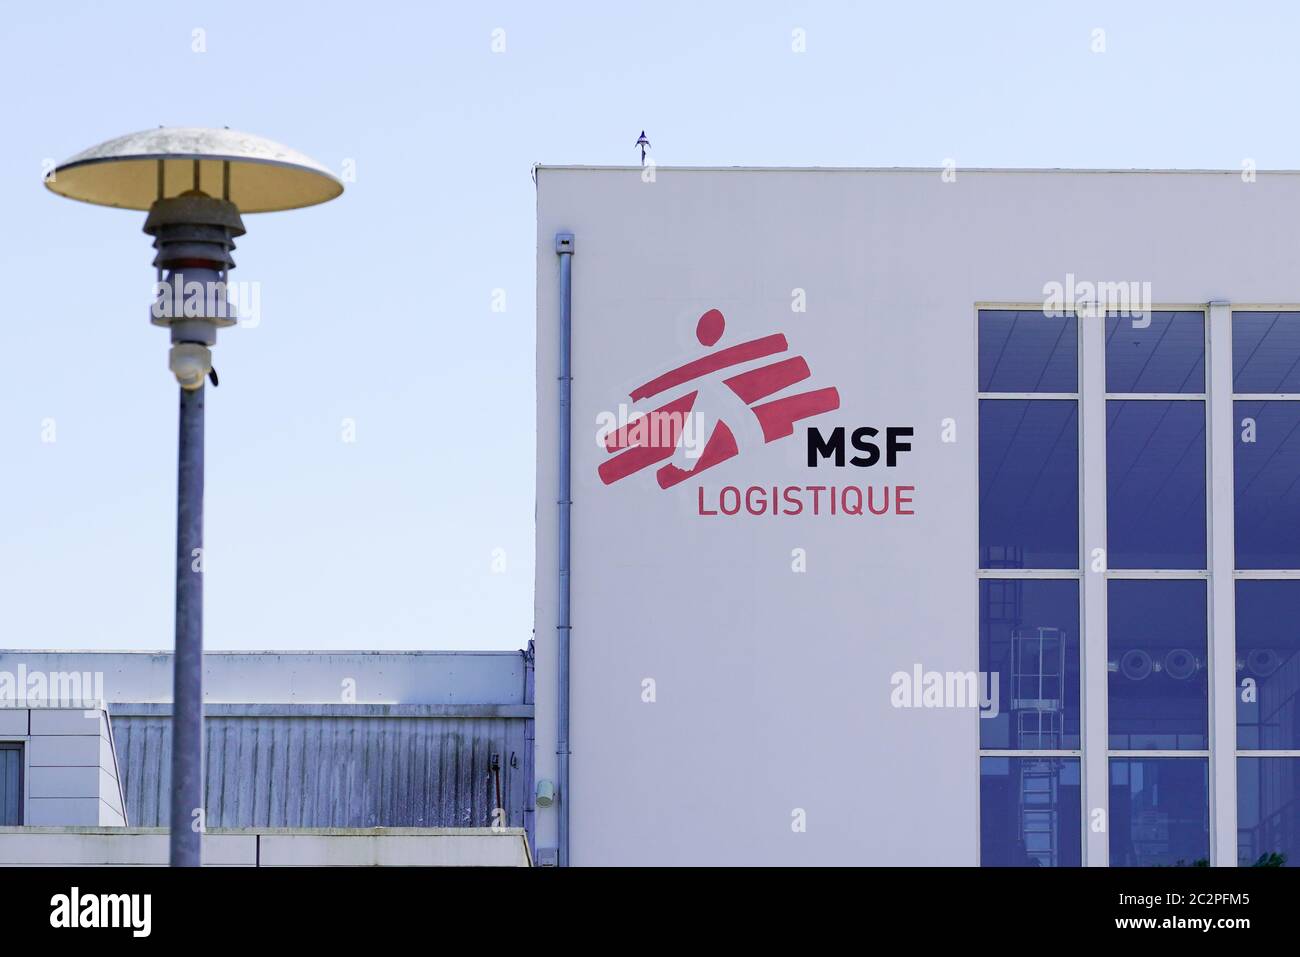 Bordeaux , Aquitaine / France - 06 14 2020 : logo MSF logistique pour médecins sans frontières Bâtiment logistique français de Medics sans frontières Banque D'Images